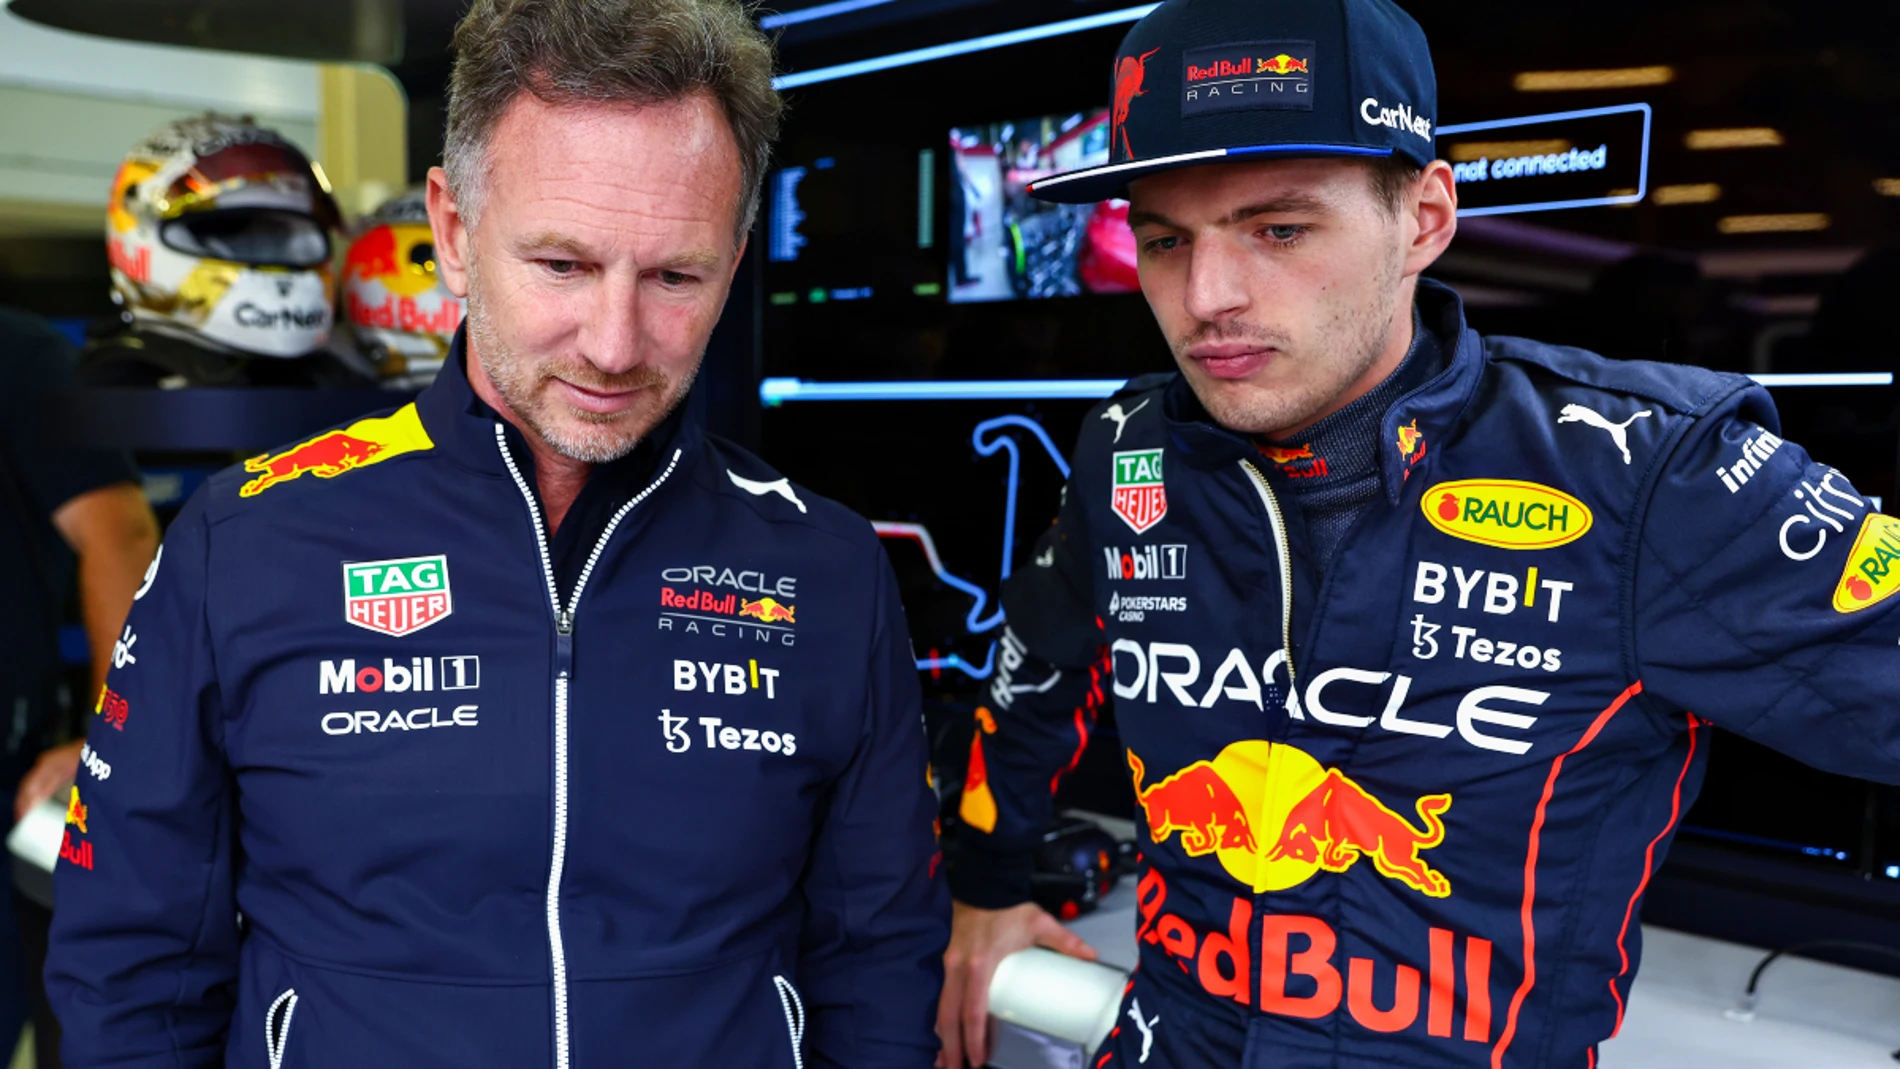 Abundantemente cooperar Trascender Horner cree que a Red Bull lo tratan como el "malo" por no tener pilotos  británicos